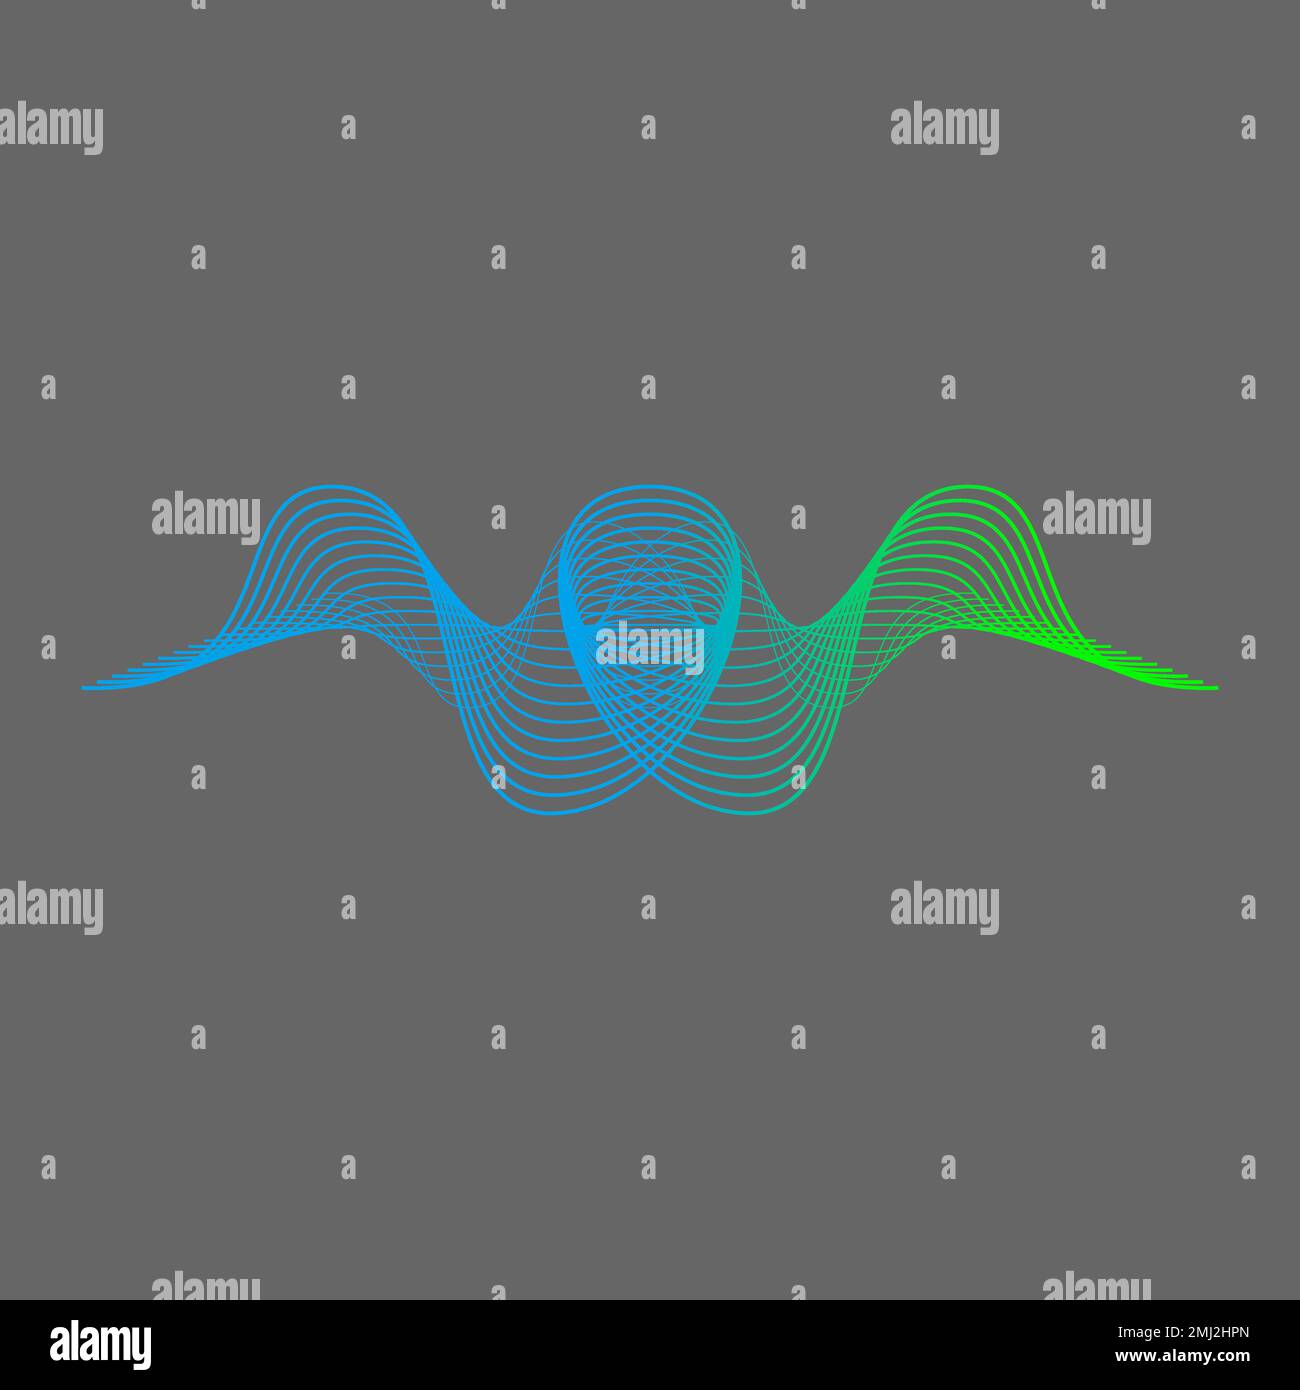 Einfache und einzigartige Reflexionslinien attraktiver Klang Klang Wellenform kreisförmiges Bild Grafiksymbol Logo Design abstraktes Konzept Vektorkunst Stock Vektor